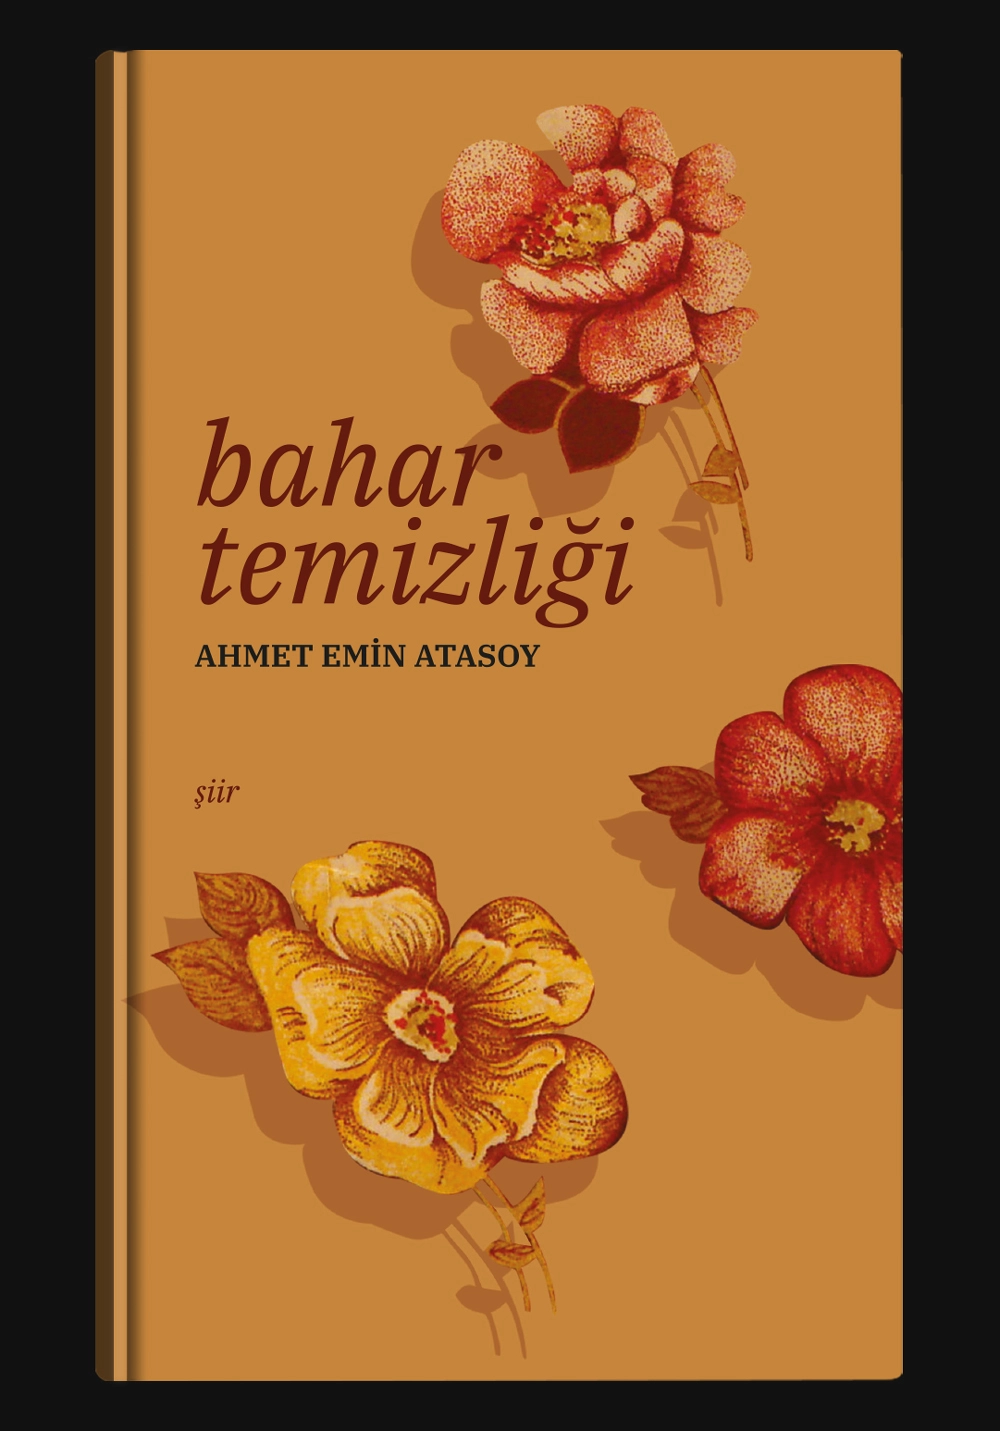 book cover design, cover design, book cover, diseño de cubierta de libro, diseño de cubierta, cubierta de libro